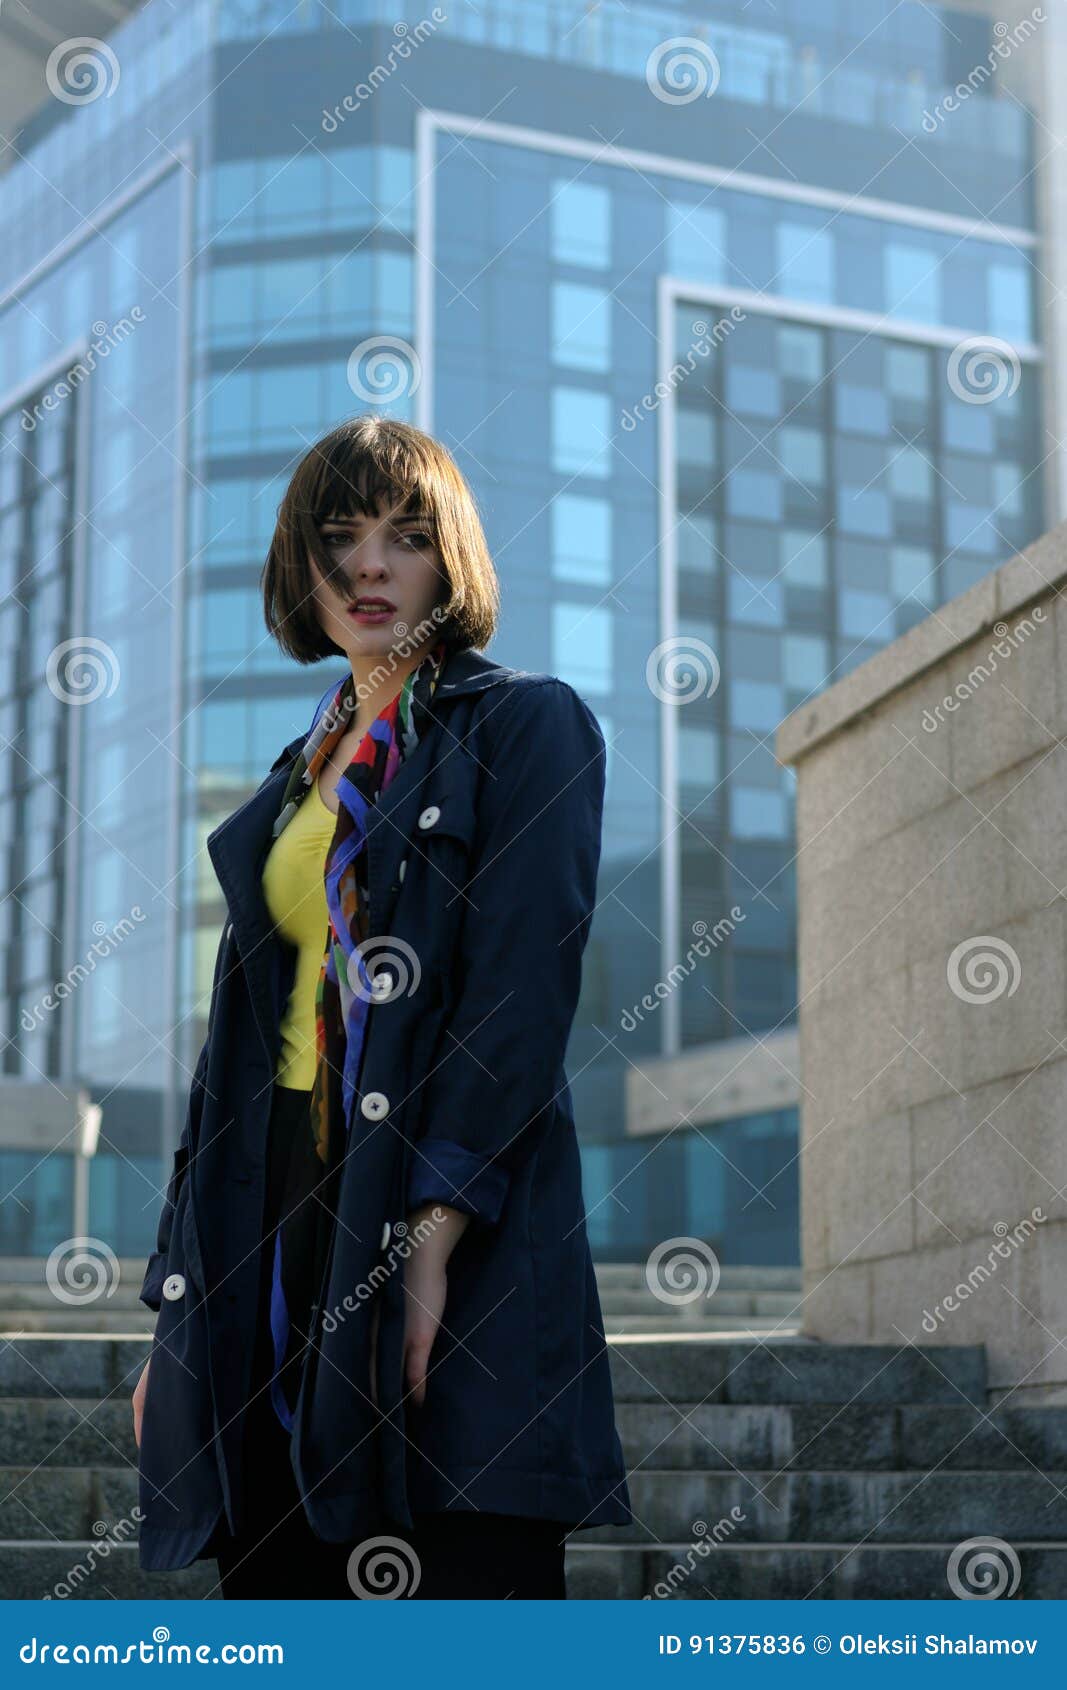 Femme d'affaires dans des vêtements formels sur le fond urbain Elle a les cheveux bruns et une coiffure de plomb, elle utilise un imperméable bleu et une écharpe autour de son cou